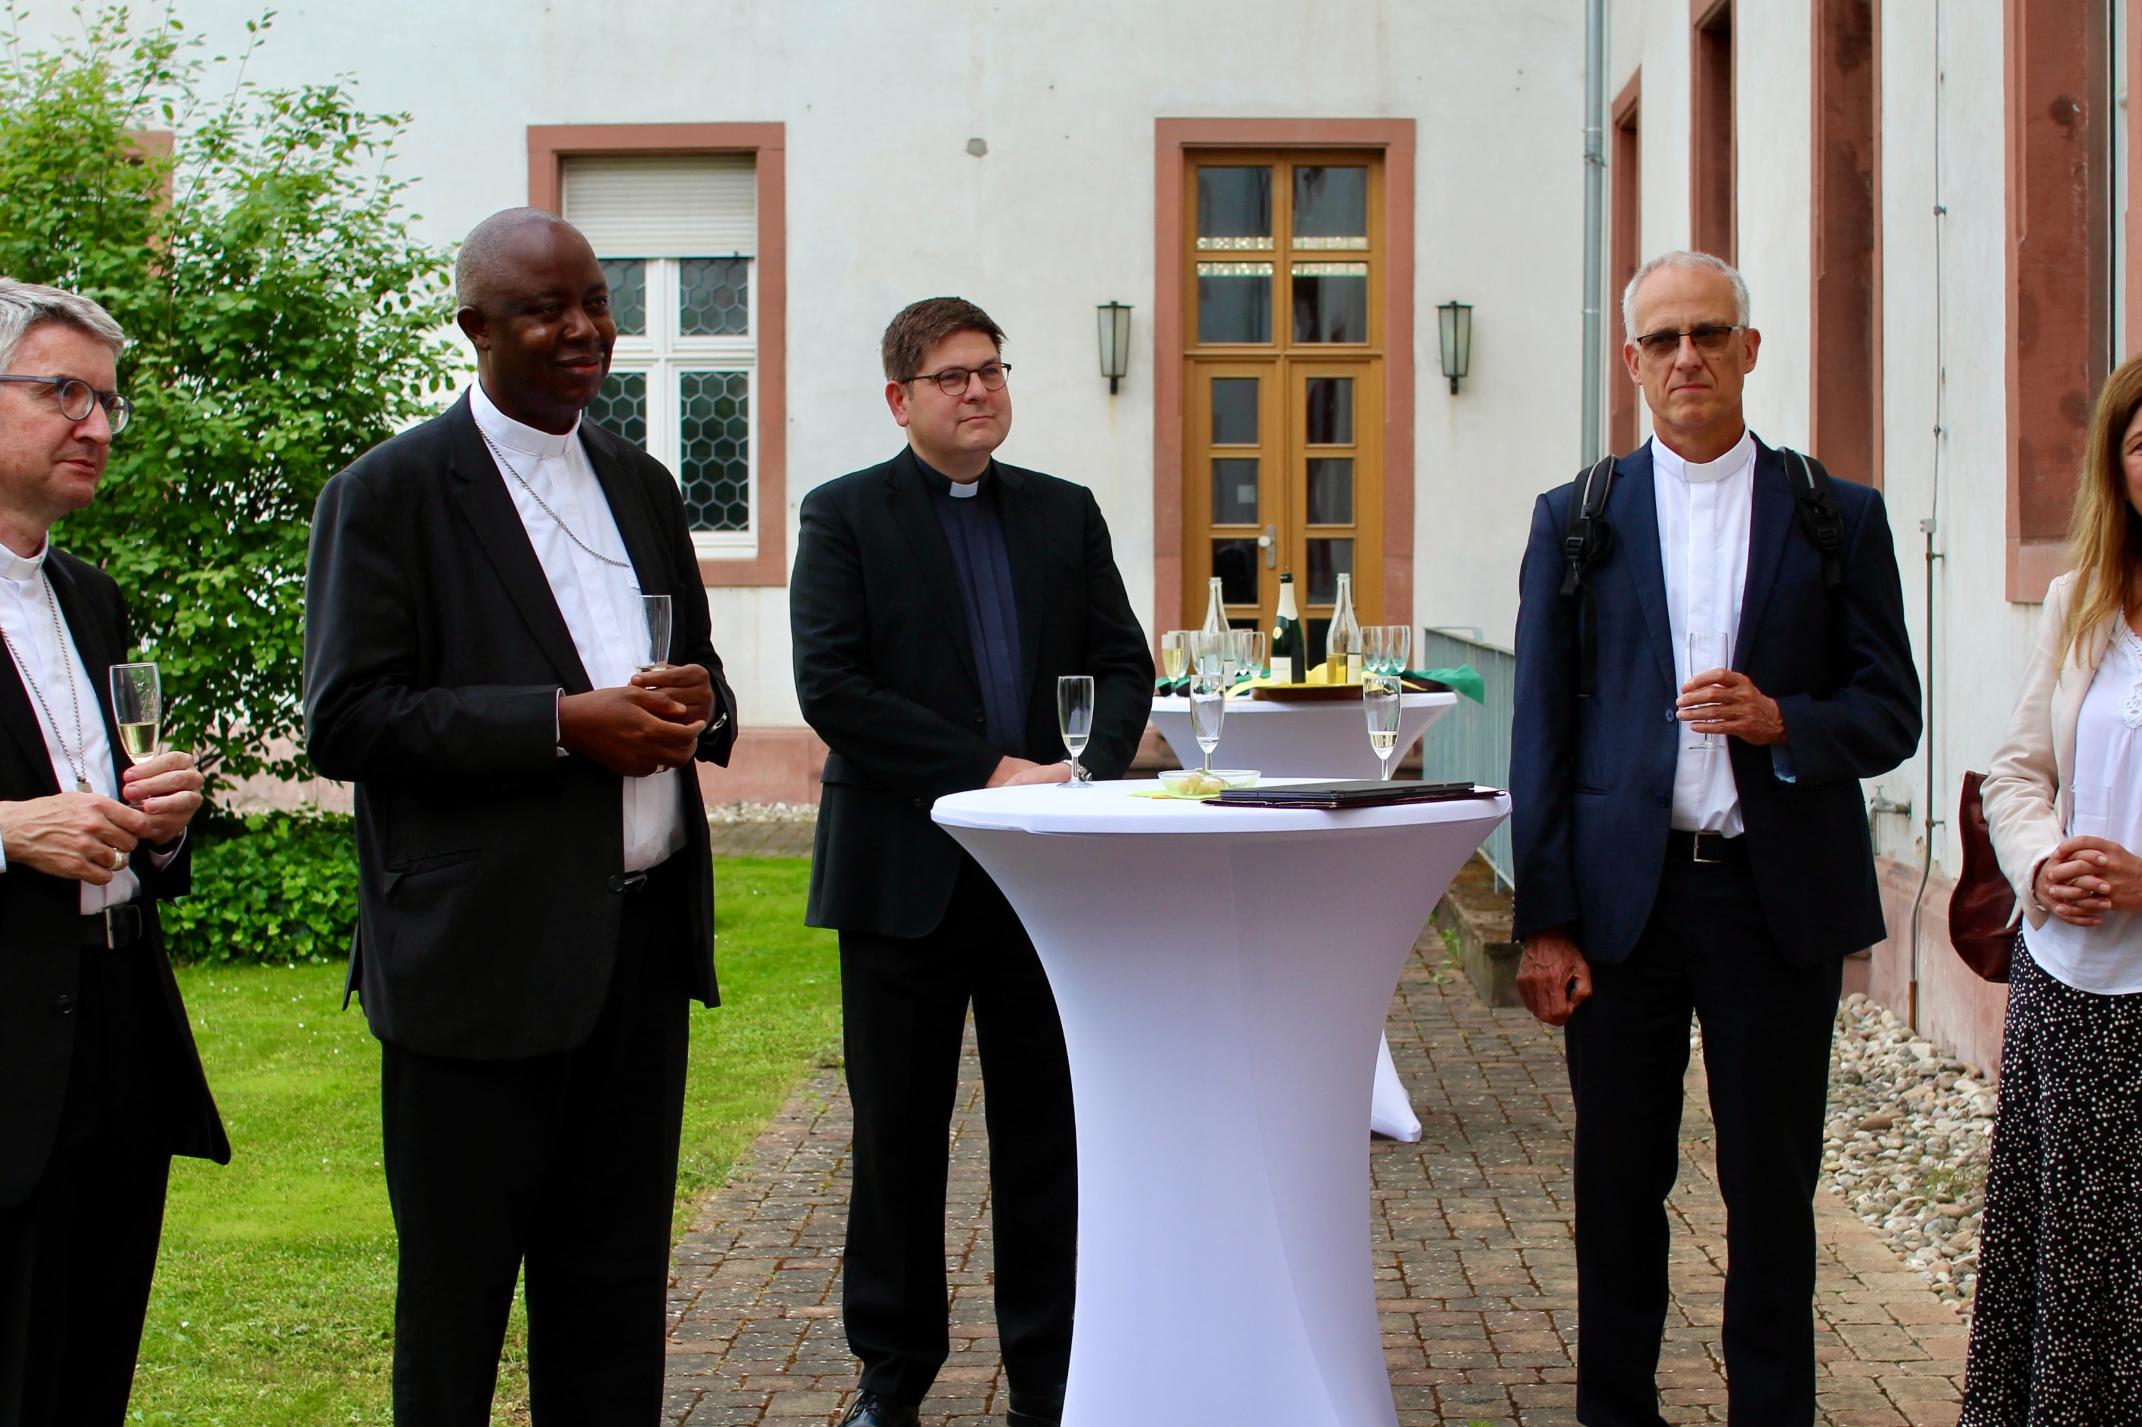 Ein gemeinsamer Abend mit Bischof Kohlgraf, Domkapitular Eberhardt, Frau Jolie, der Sprachlehrerin und der Hausleitung des Priesterseminars.